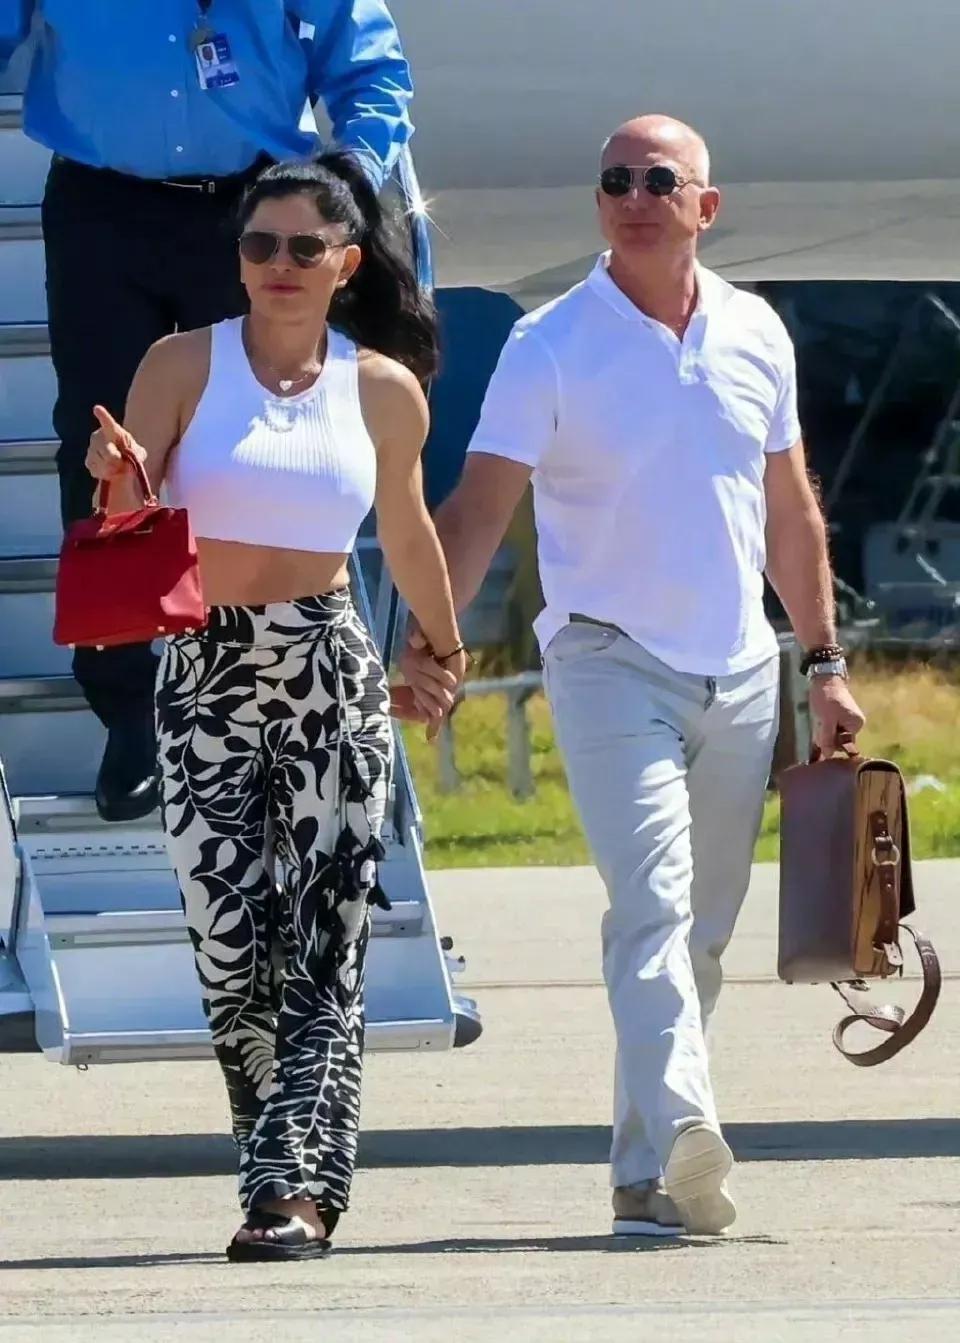 贝佐斯和女友桑切斯抵达迈阿密，俩人手牵手太温馨，桑切斯短衫配花裤挺时髦！

贝索